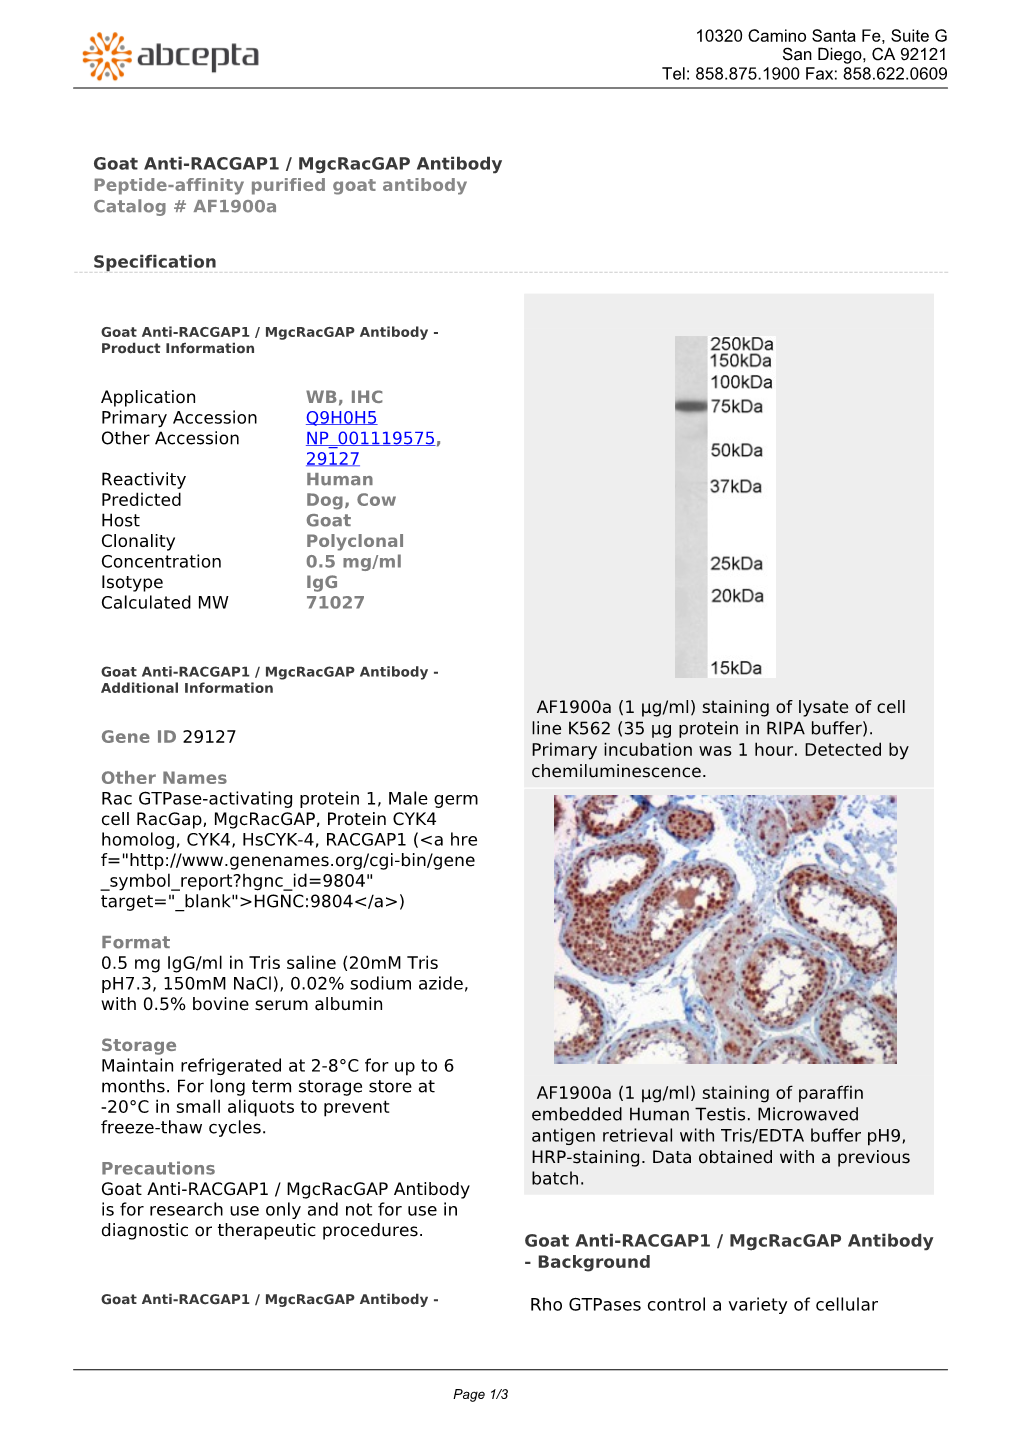 Goat Anti-RACGAP1 / Mgcracgap Antibody Peptide-Affinity Purified Goat Antibody Catalog # Af1900a